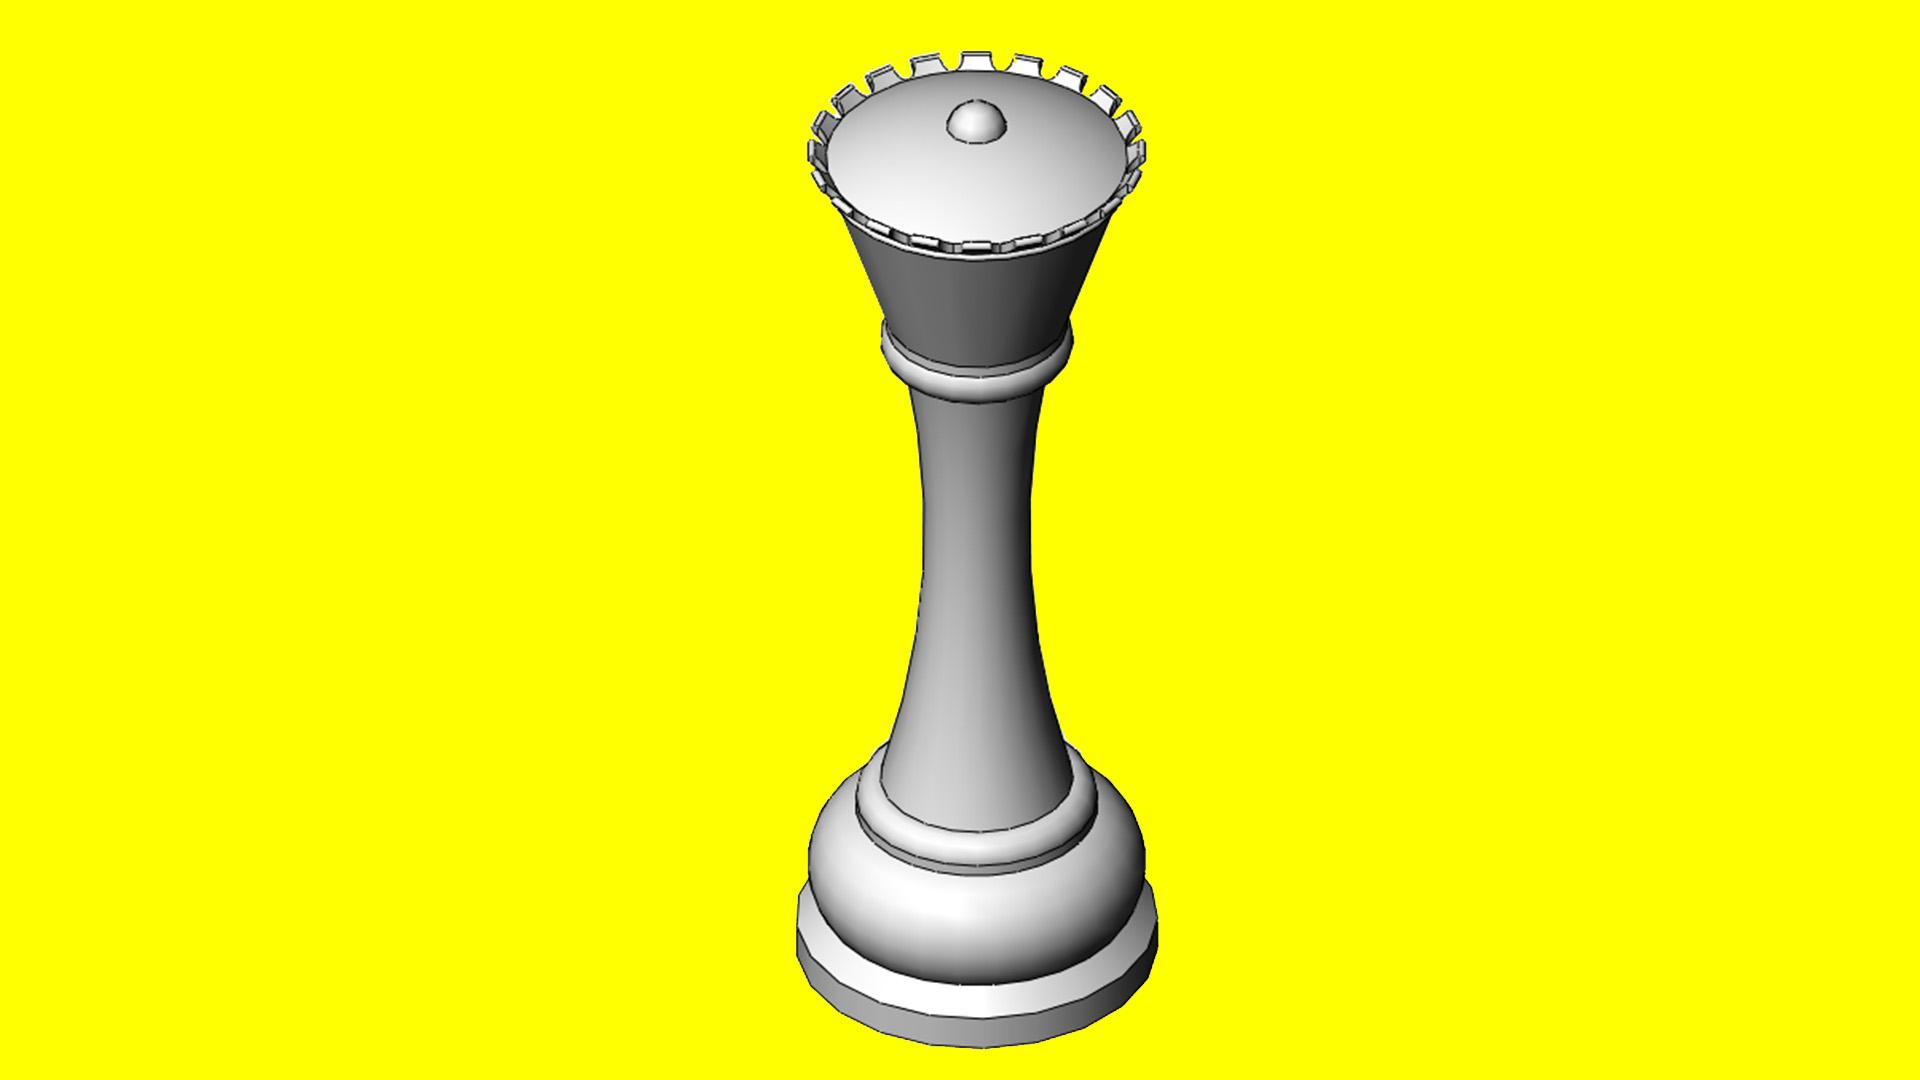 Modelo 3D Lowpoly da Rainha do Xadrez - TemplateMonster